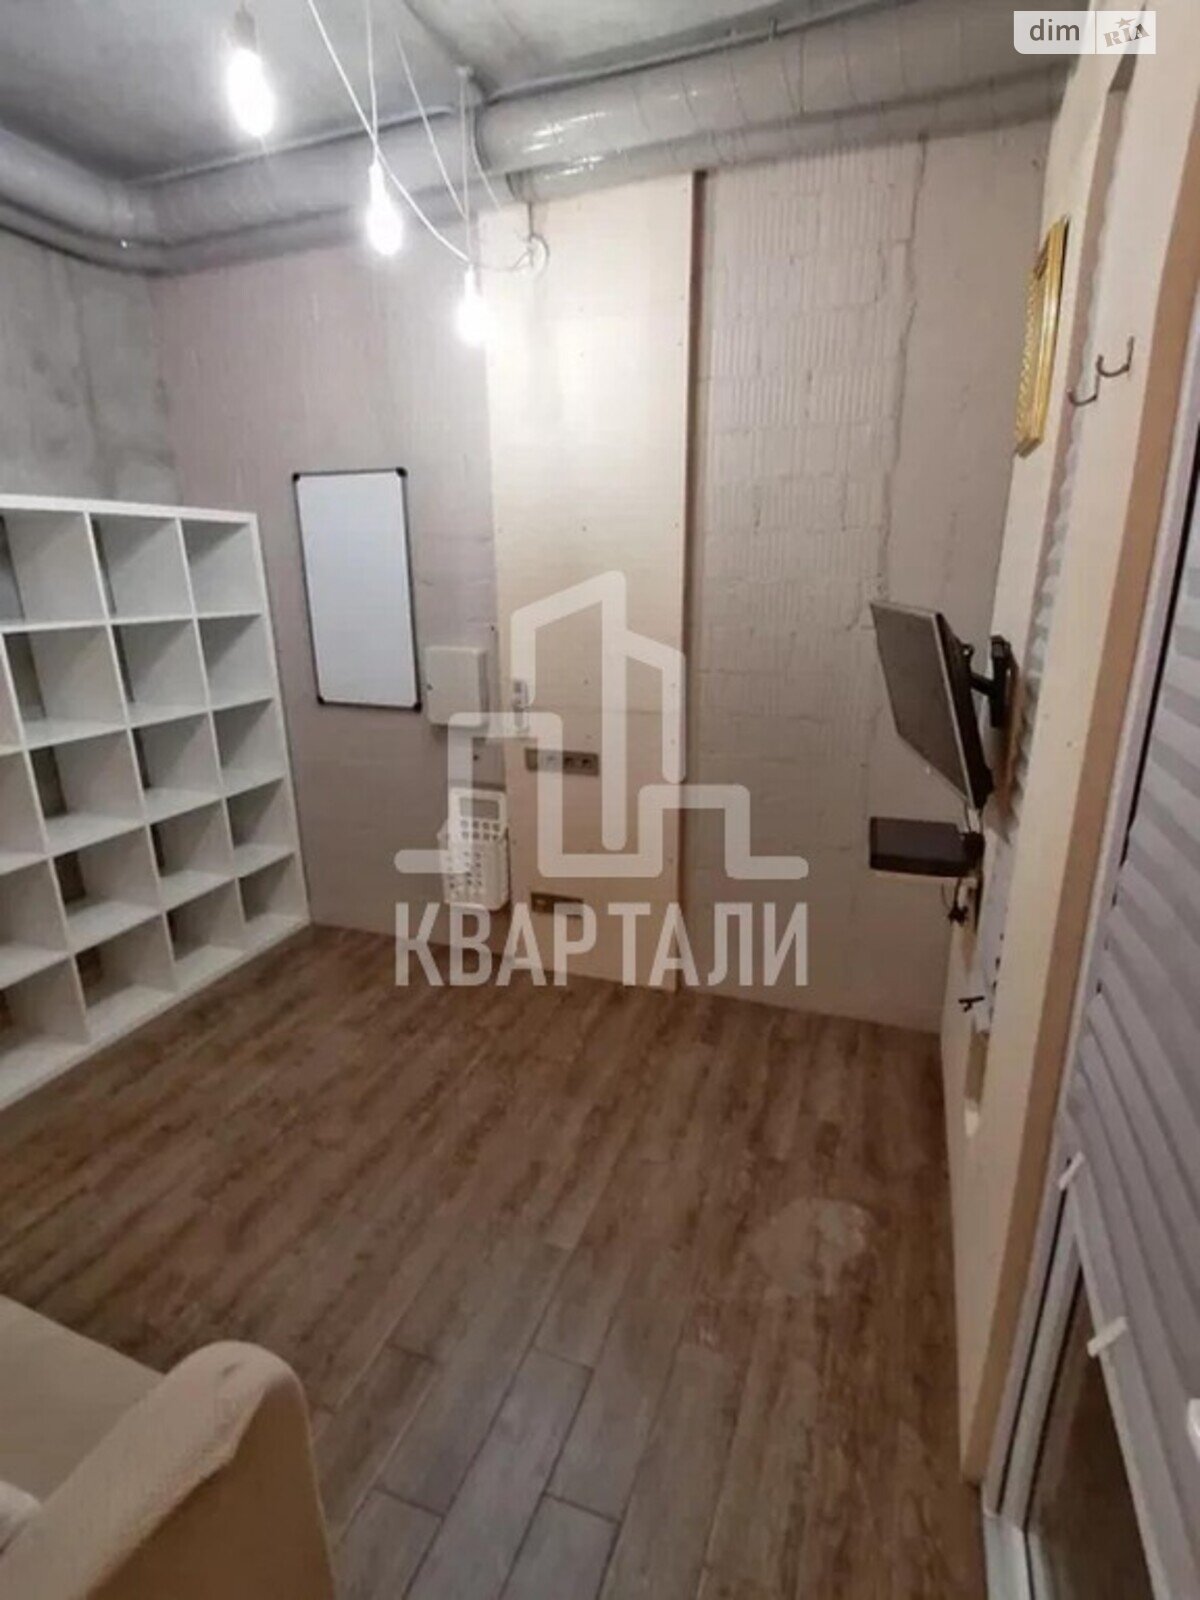 Офисное помещение на 126 кв.м. в Киеве фото 1